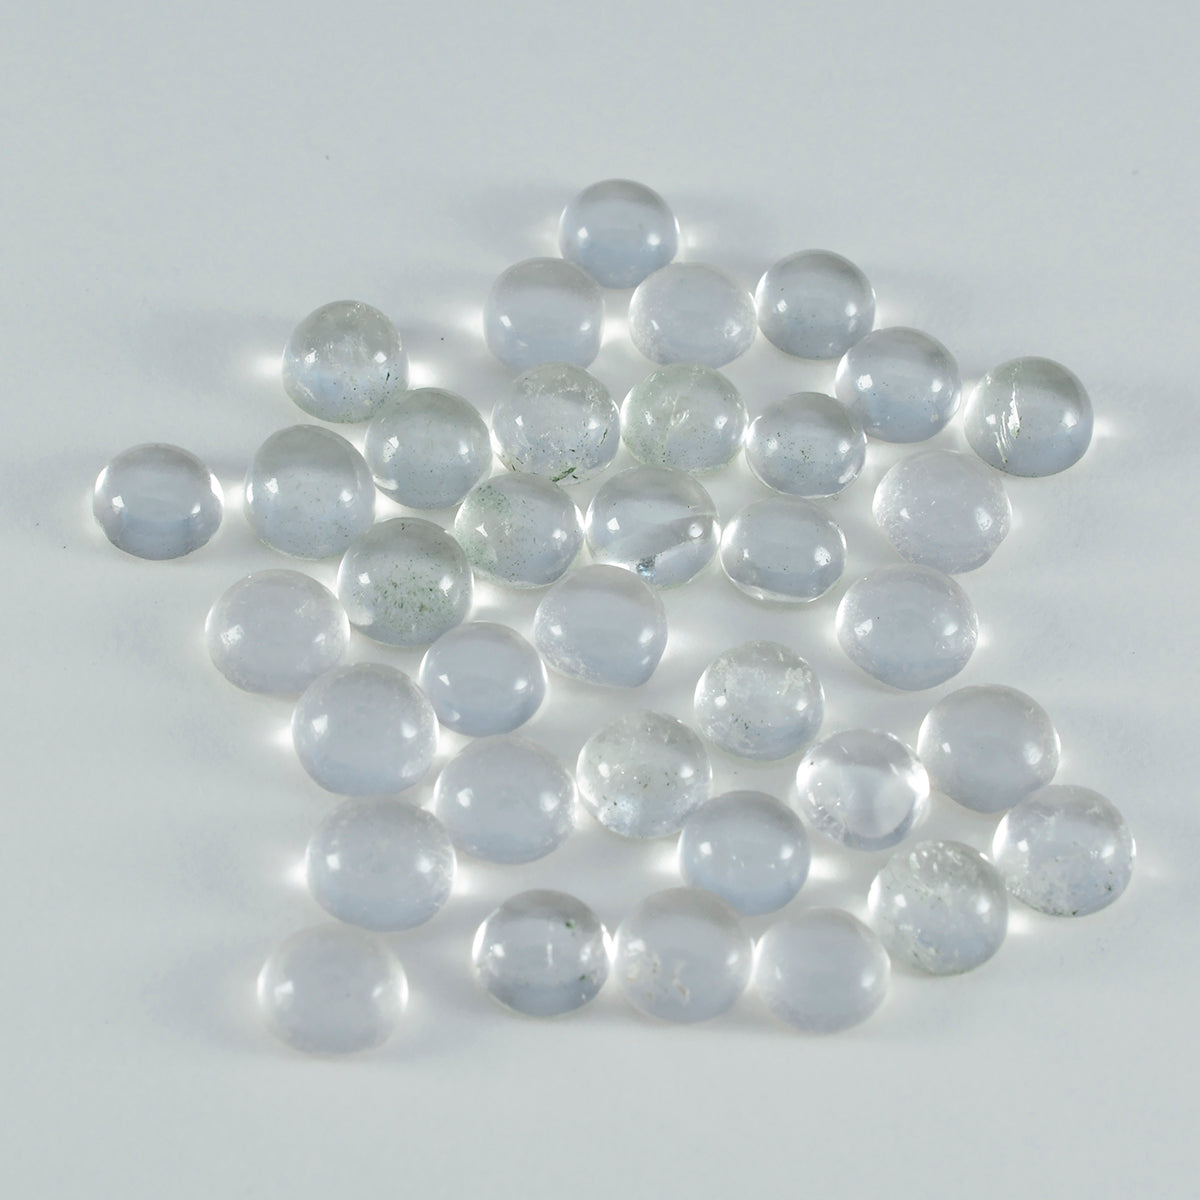 Riyogems – cabochon de quartz en cristal blanc, 4x4mm, forme ronde, qualité aa, pierres précieuses en vrac, 1 pièce